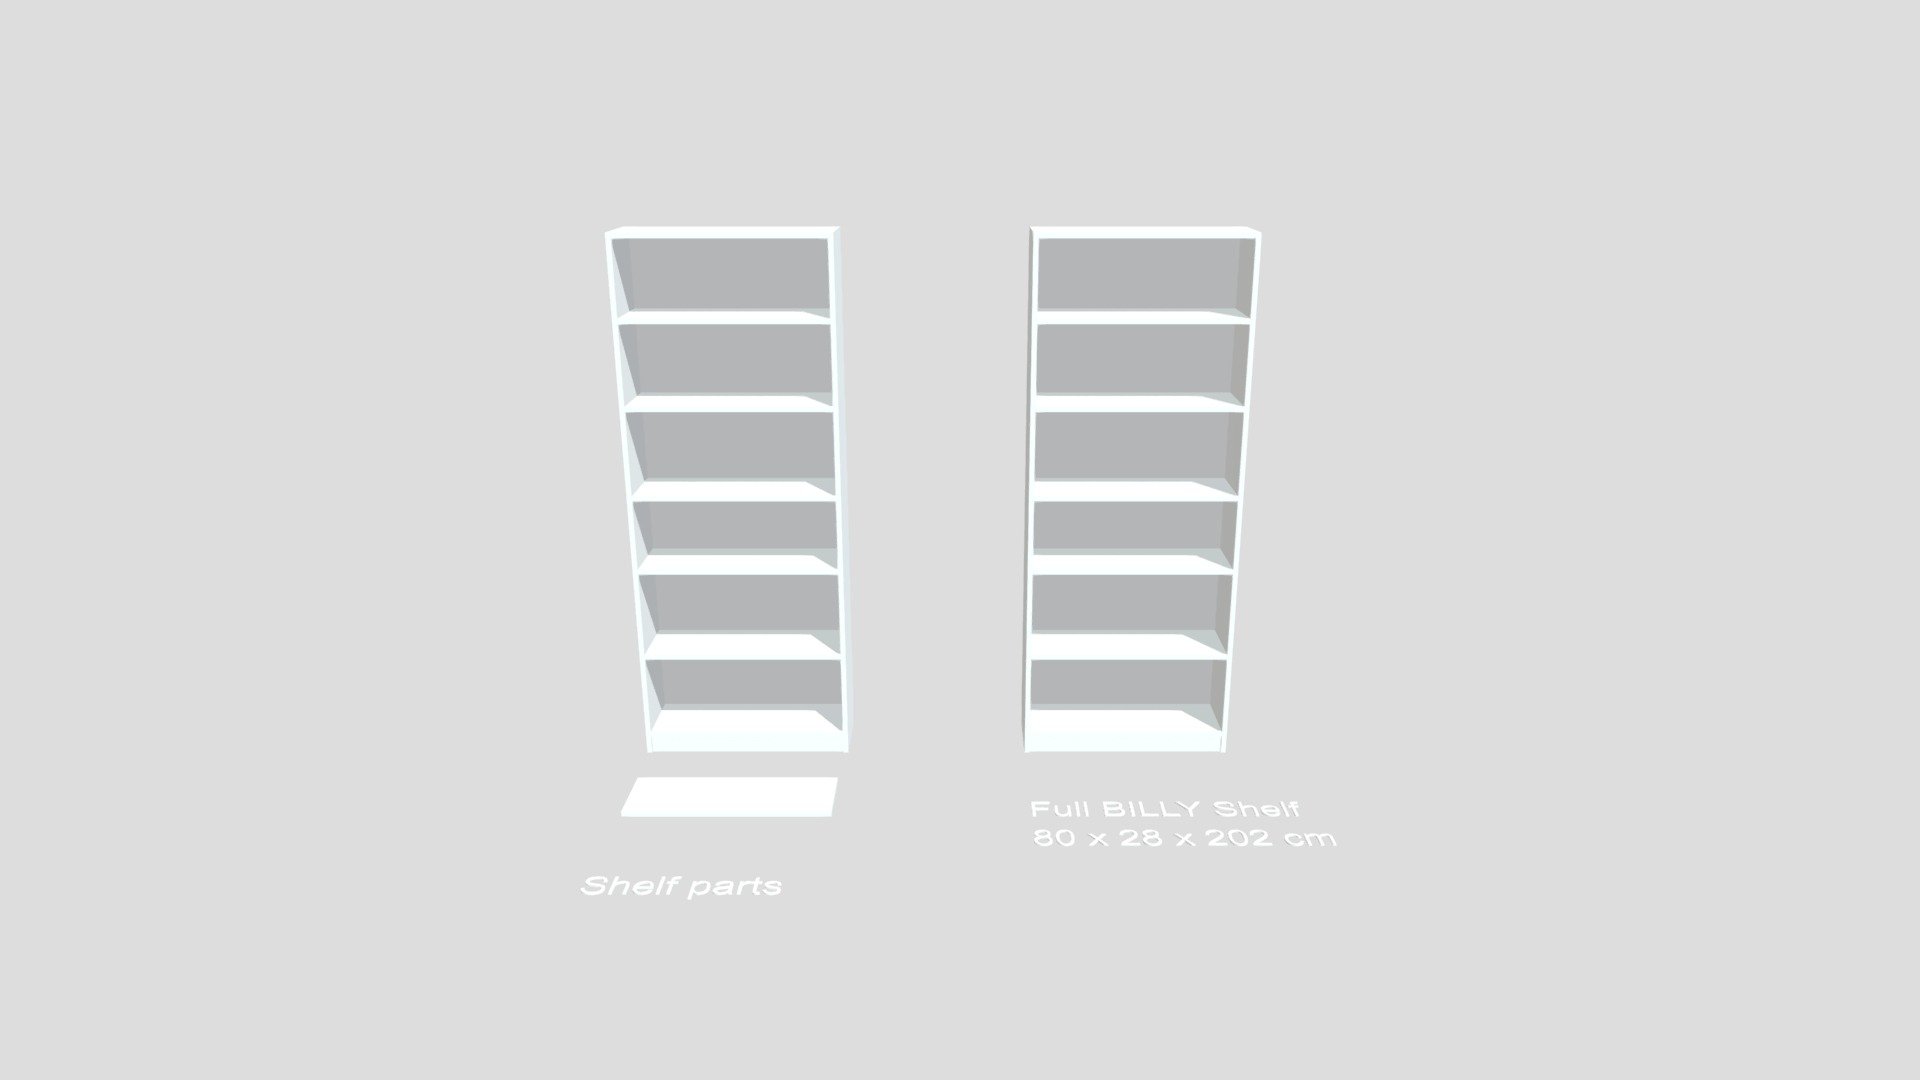 IKEA Article 103.515.68 - IKEA BILLY Bookshelf, white, 80x28x202 cm - Download Free 3D model by artlab.one 3d model